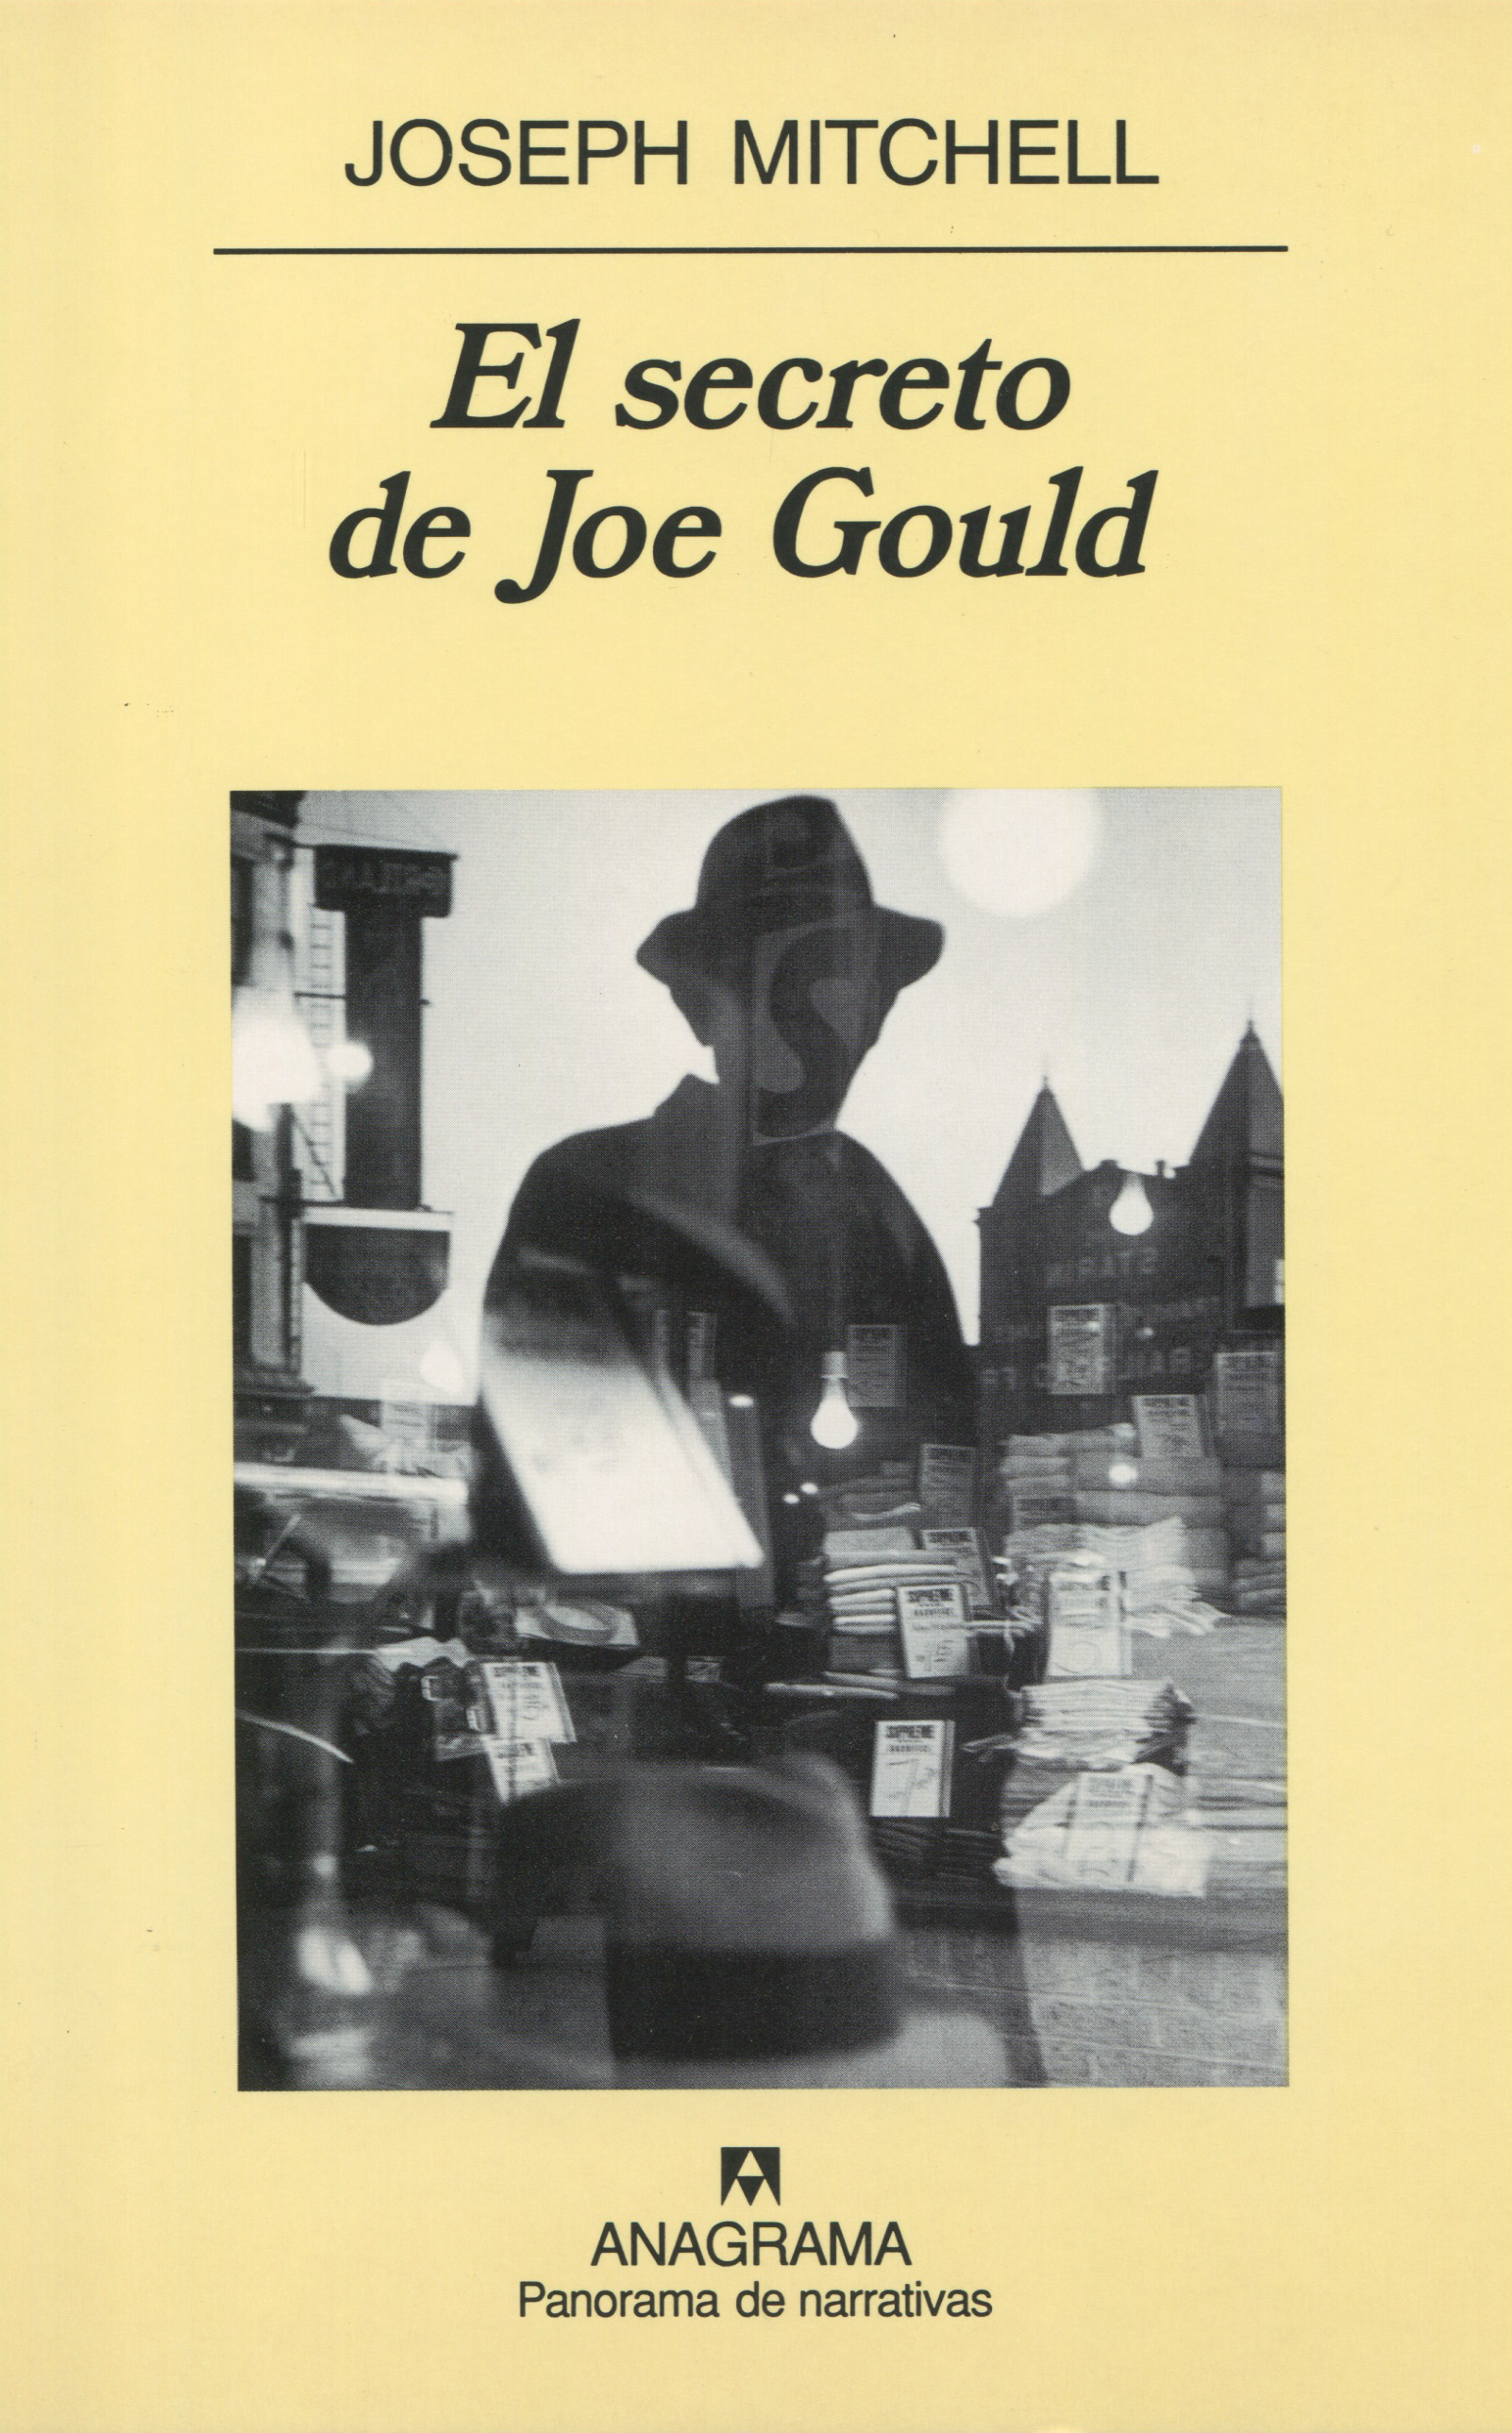 El secreto de Joe Gould - Mitchell, Joseph - 978-84-339-6906-4 - Editorial  Anagrama